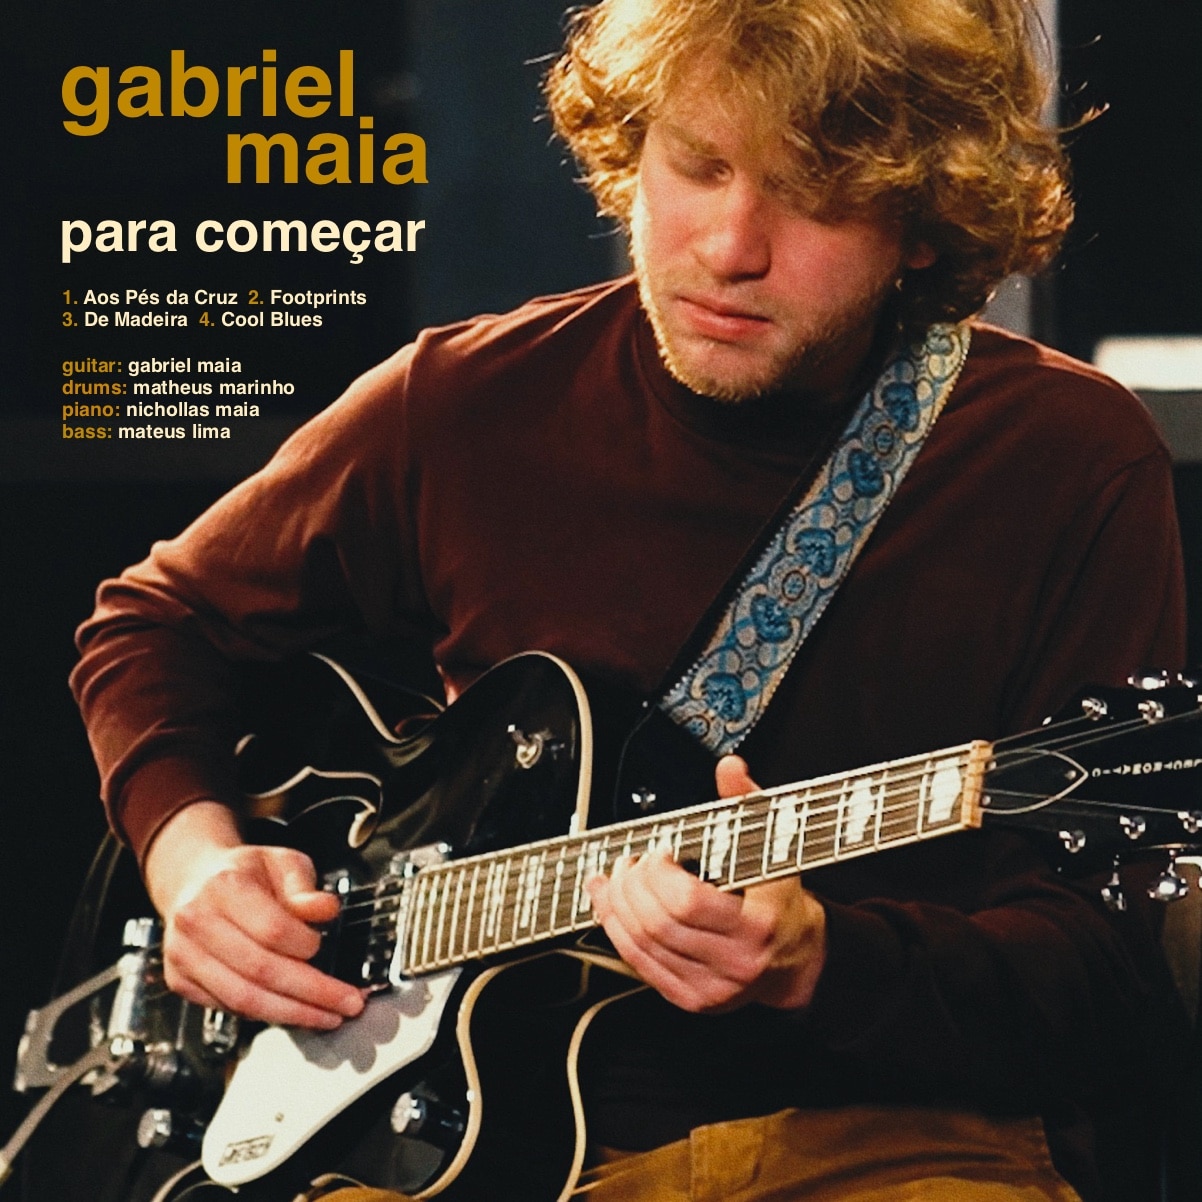 revistaprosaversoearte.com - Gabriel Maia lança EP 'Para Começar'